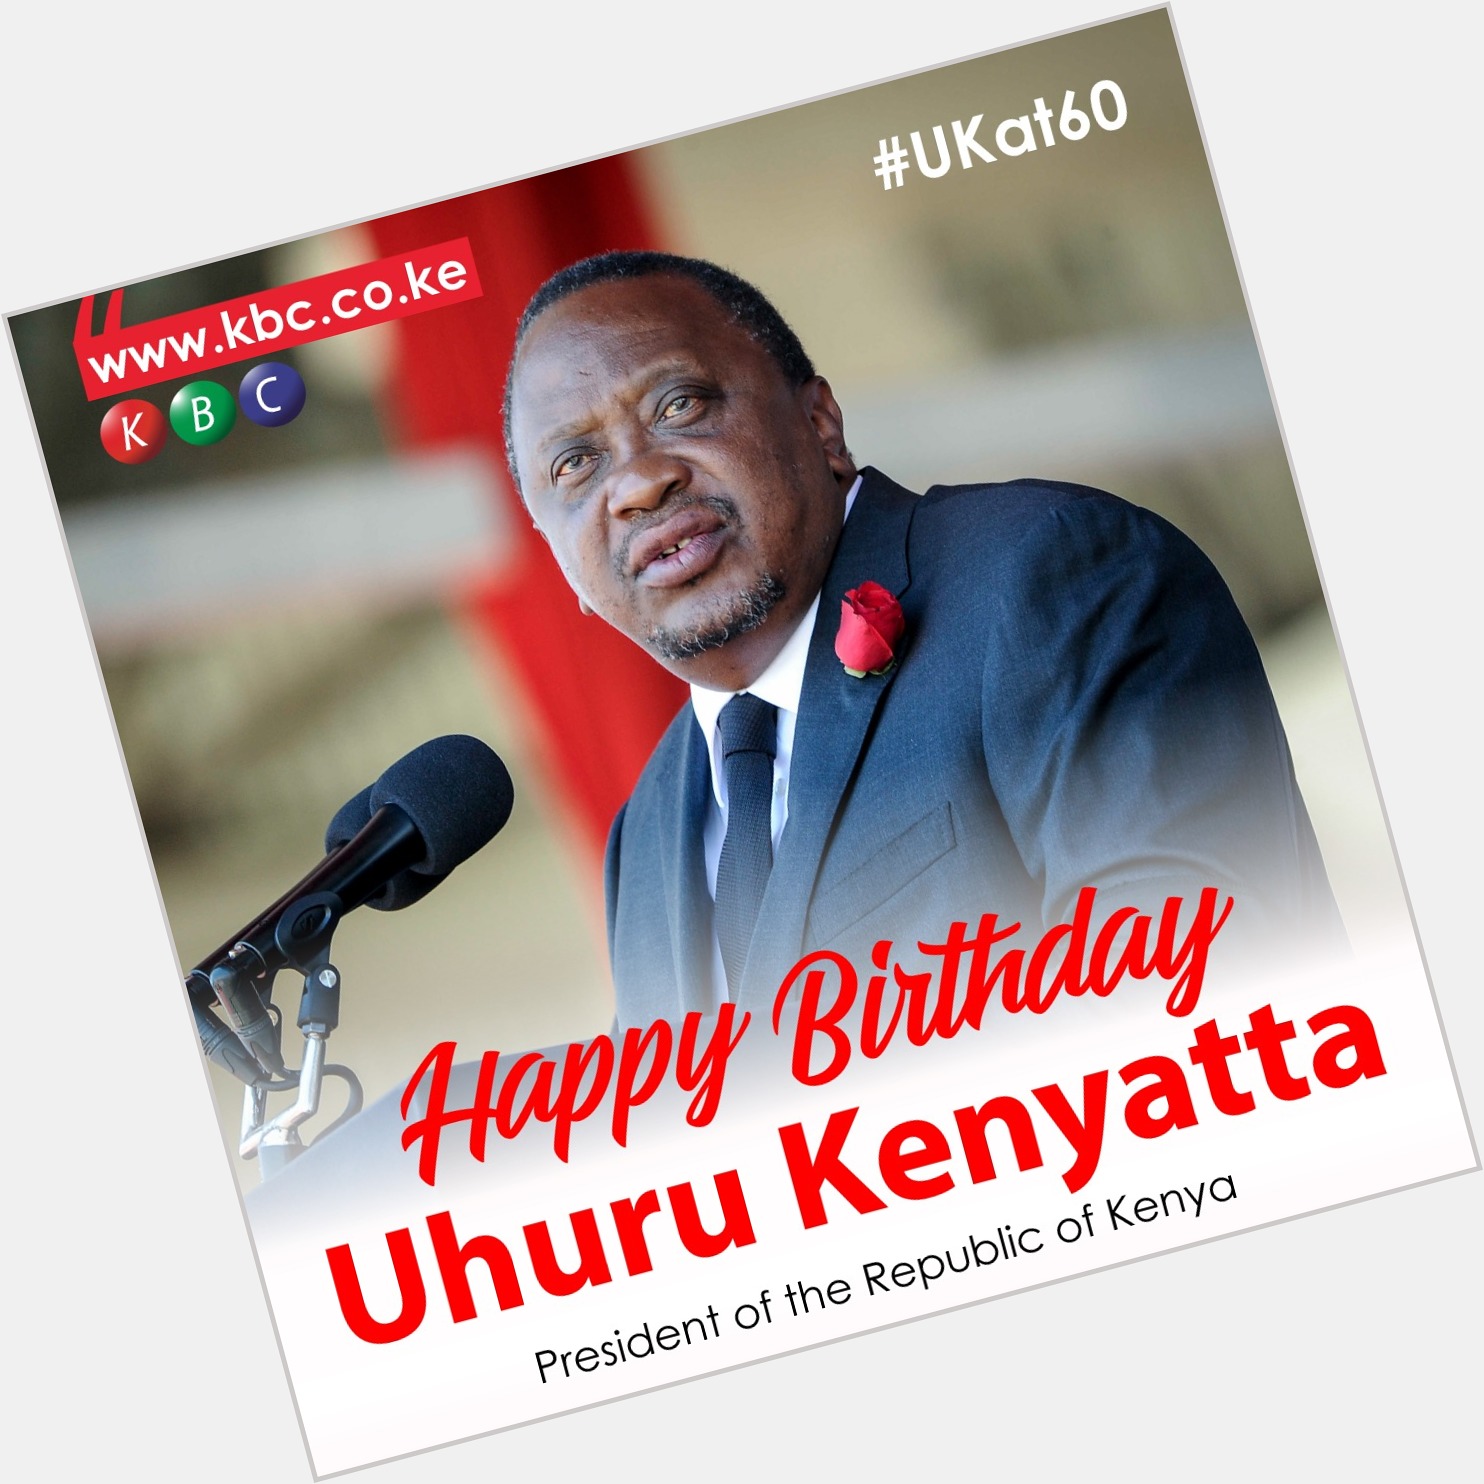 Happy Birthday Mr. President. 
President Uhuru Kenyatta turns 60 today. 